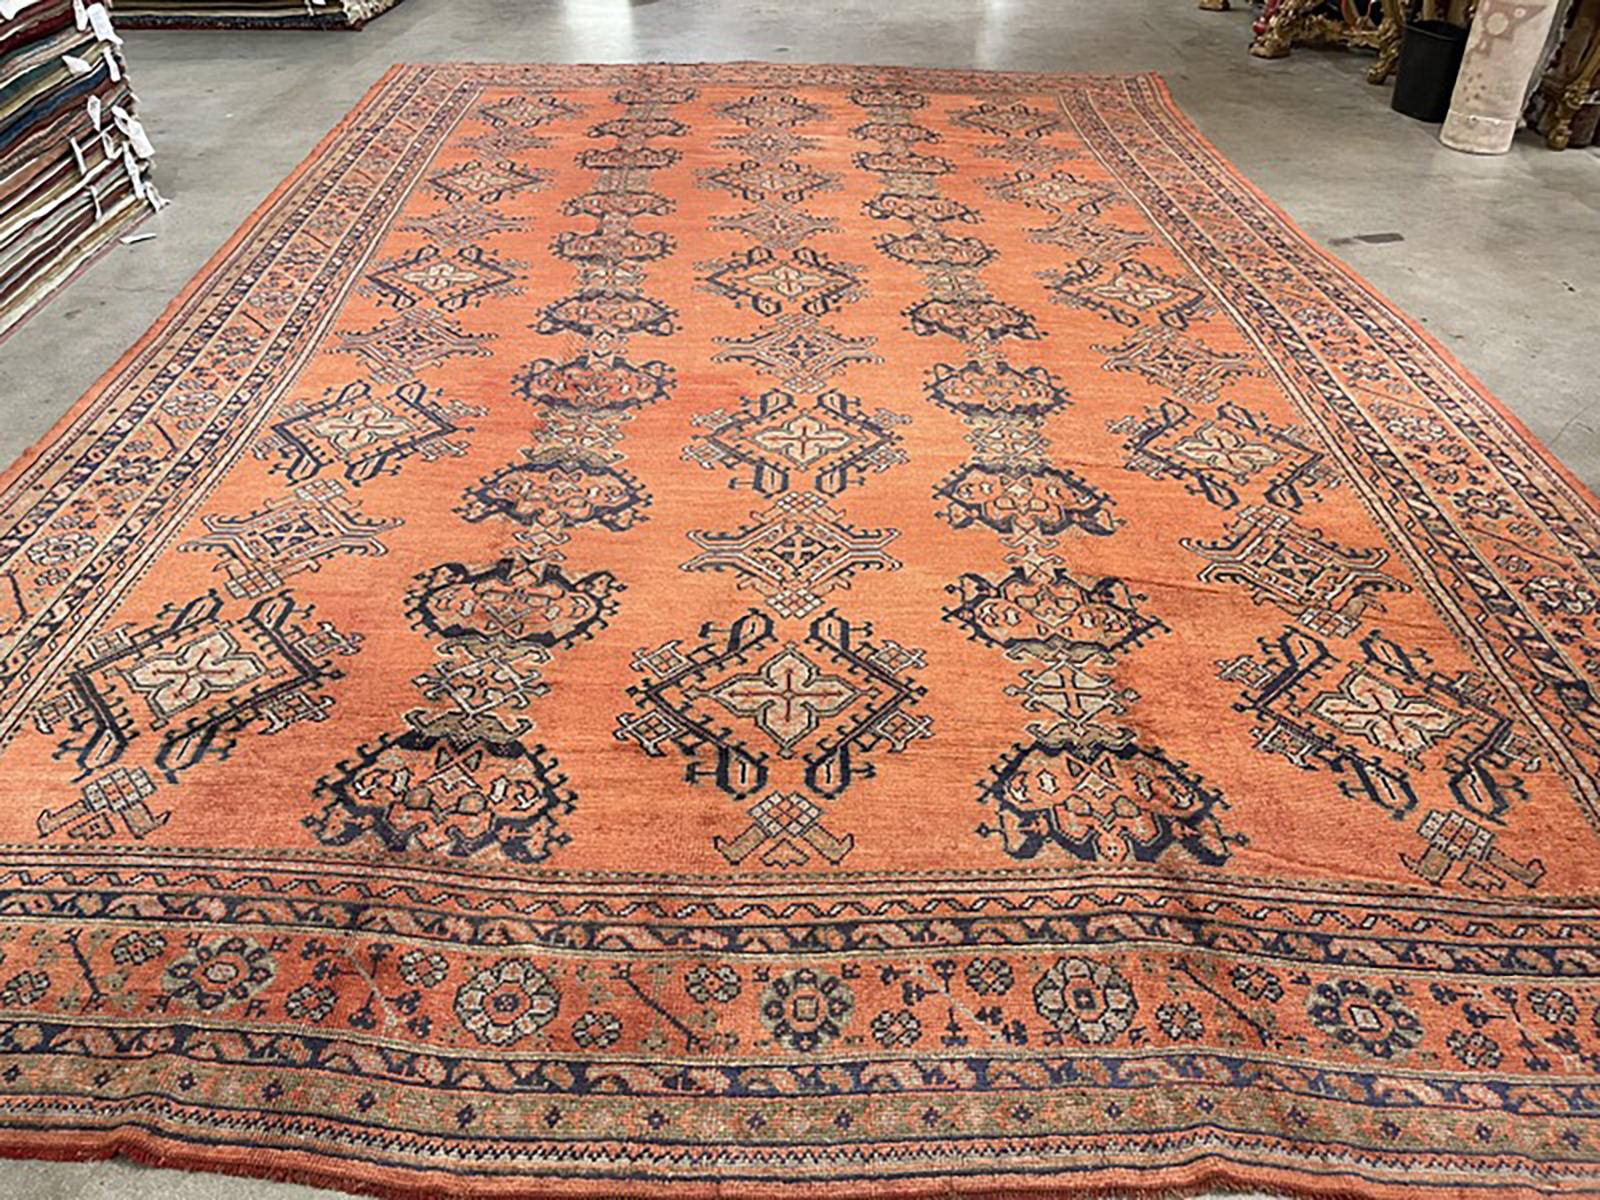 Oversized antique Oushak rug.

Measures: 13' x 20'.